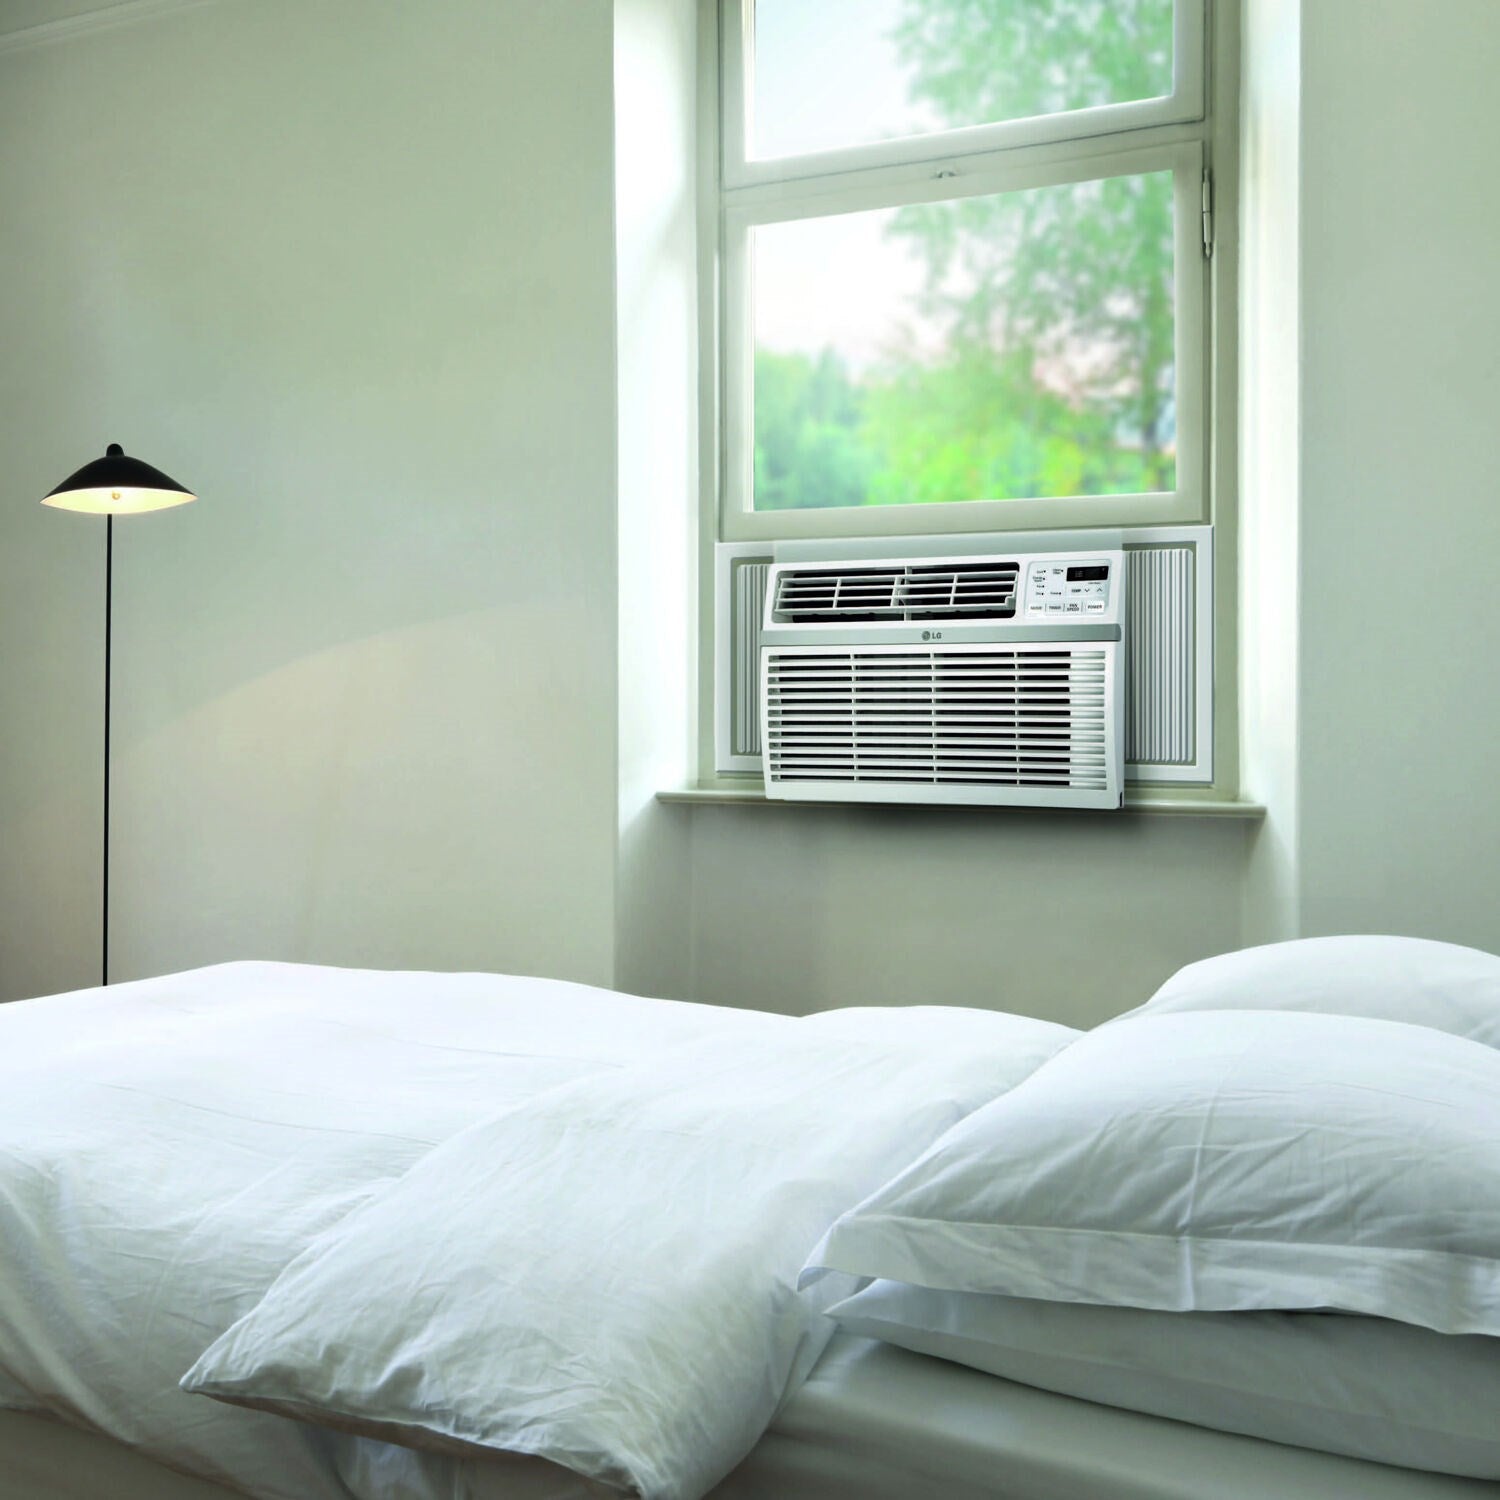 LG - 8,000 BTU Window Air Conditioner with Wifi Controls - LW8017ERSM1